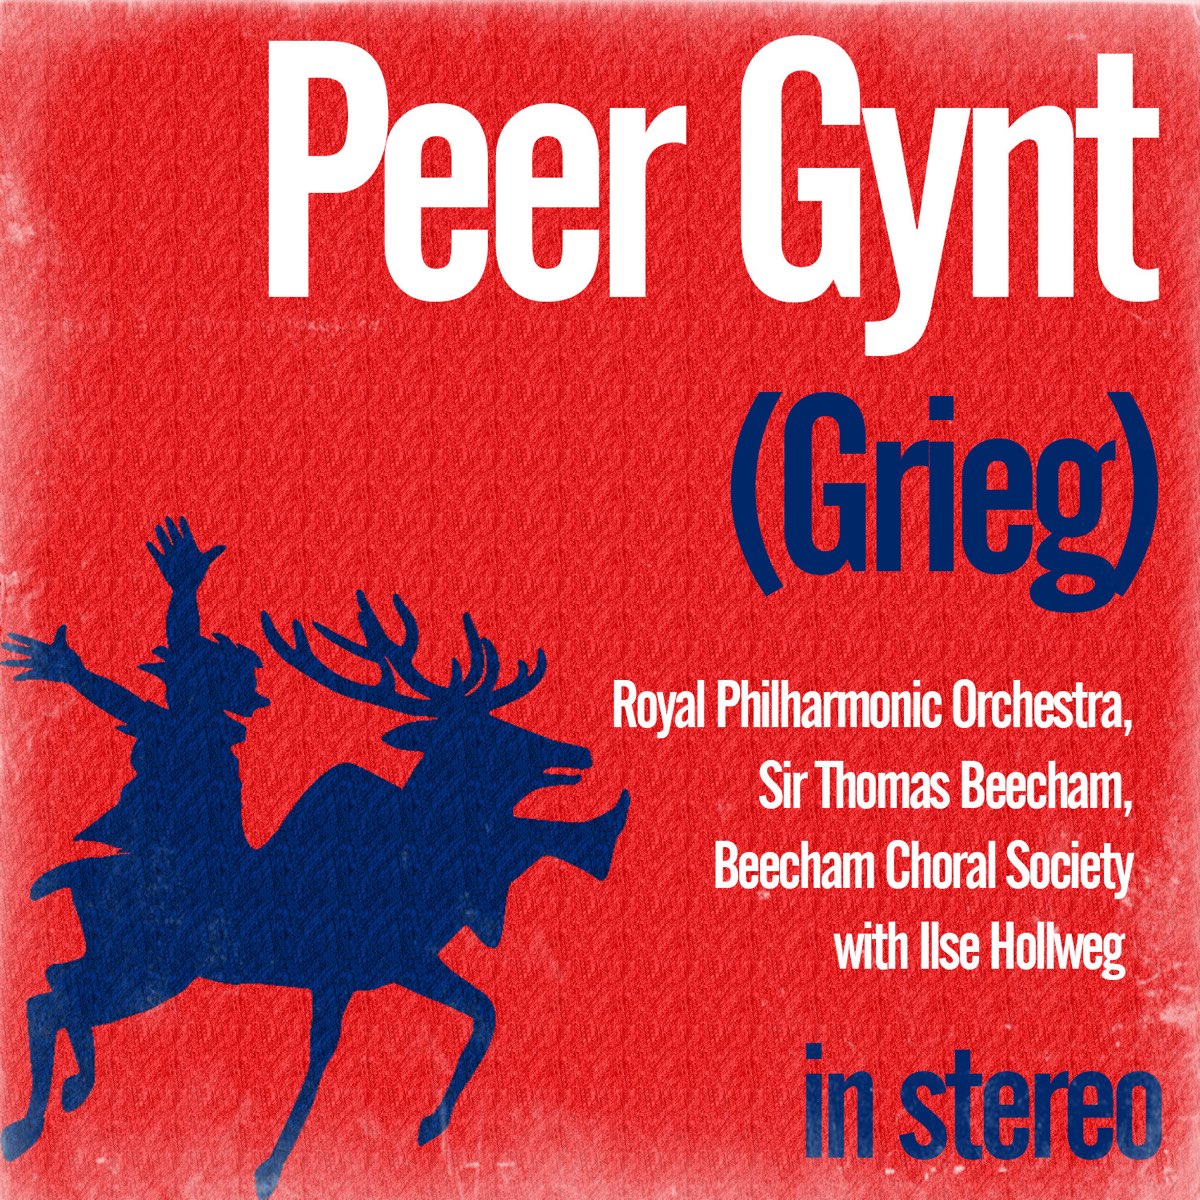 Peer gynt in the hall. Peer Gynt. Peer Gynt CYSMIX. Peer Gynt and brand.